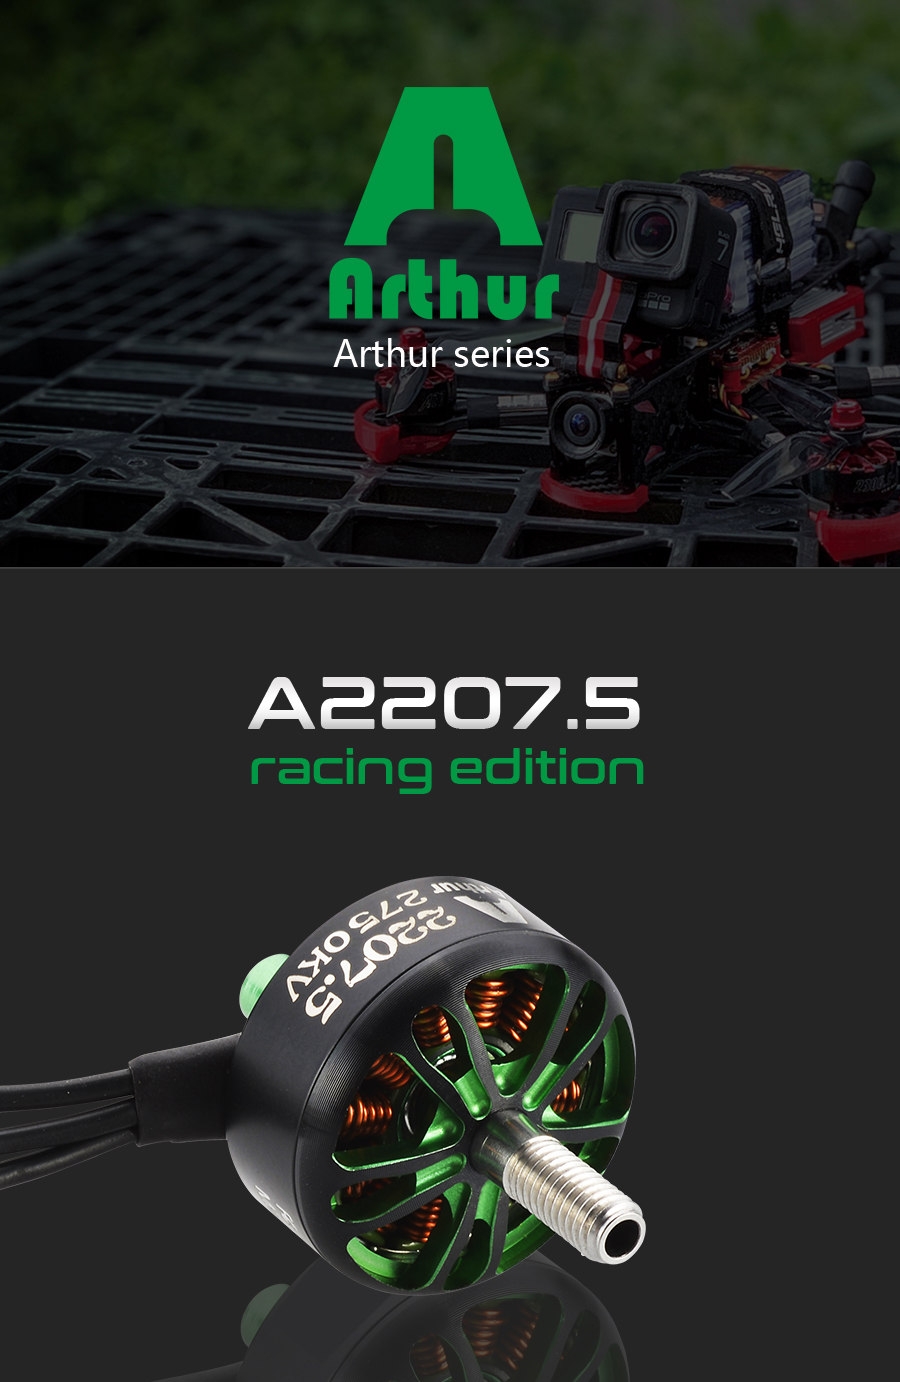 Flashhobby Arthur Series A2207.5 2207.5 1900KV 3-6S / 2450KV 2750KV 2-4S Brushless Motor for RC Drone FPV Racing